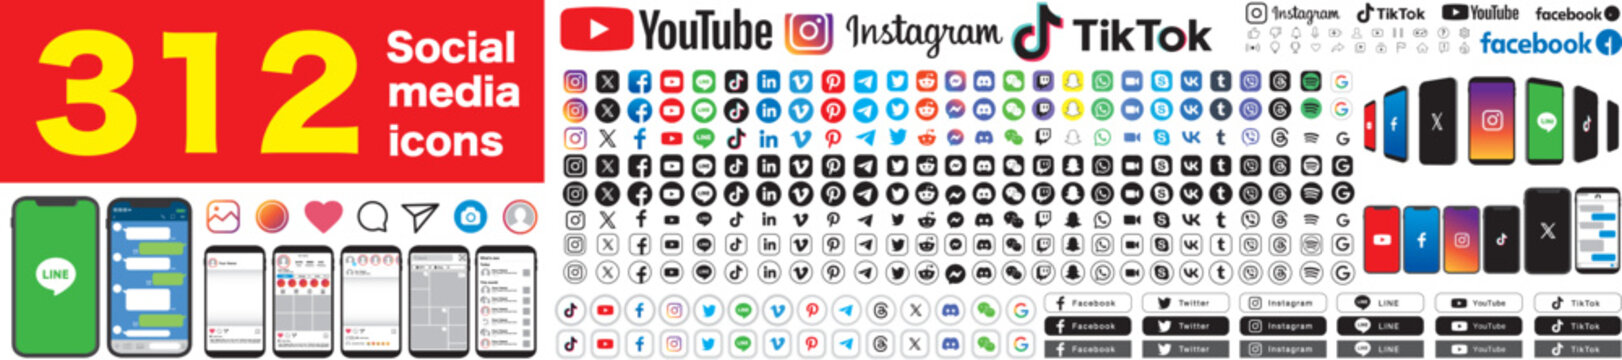 Social media icons. X, Twitter, Youtube, Facebook, Instagram, Pinterest, Vimeo, Skype, Viber, TikTok, Linkedin, Telegram. vector